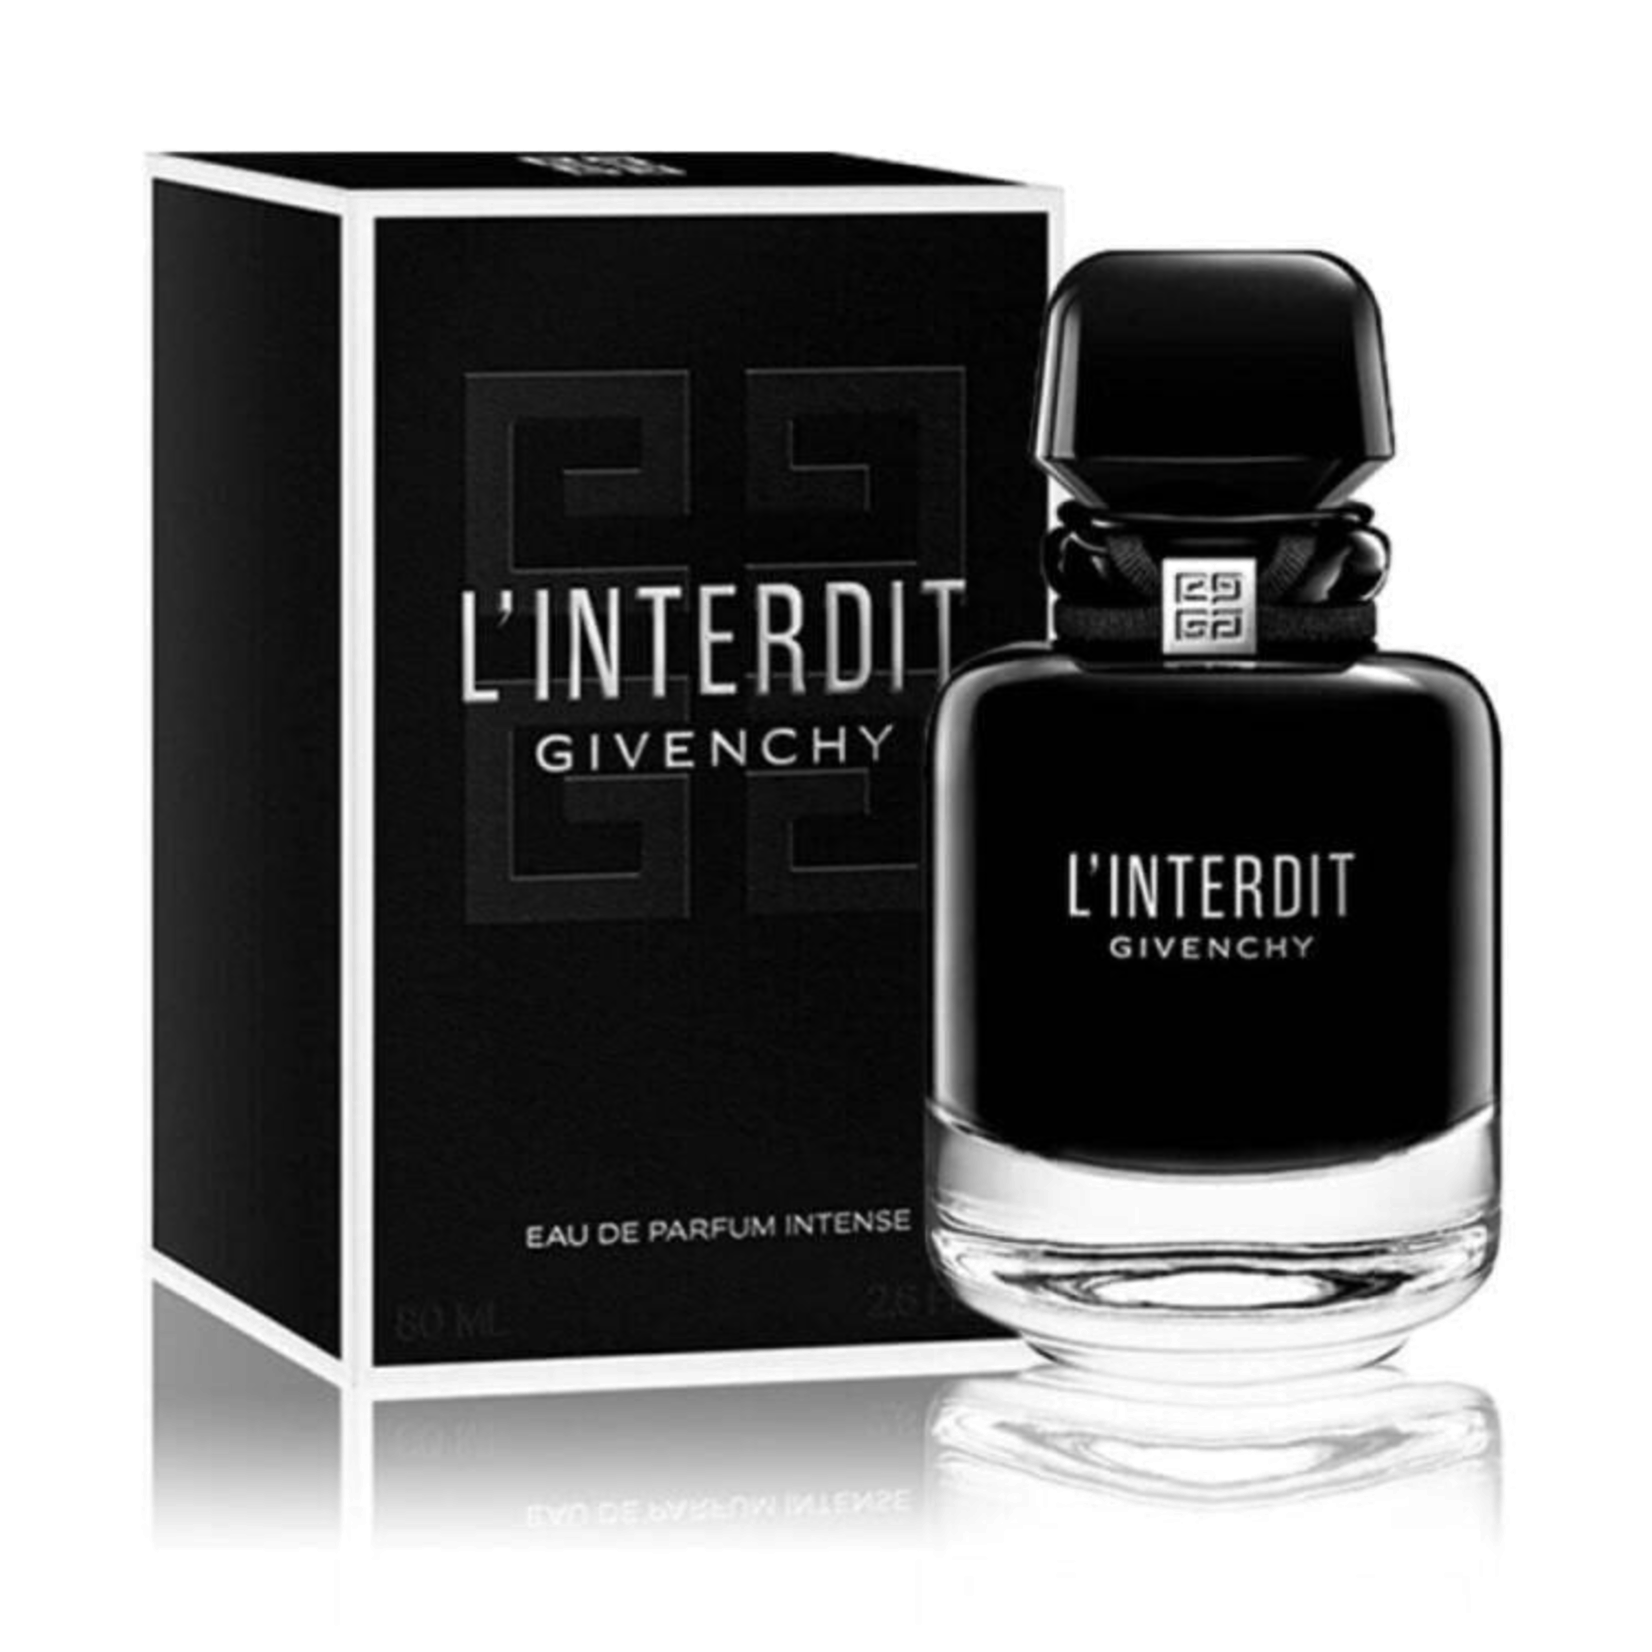 Givenchy Givenchy L'interdit Intense Eau de Parfum